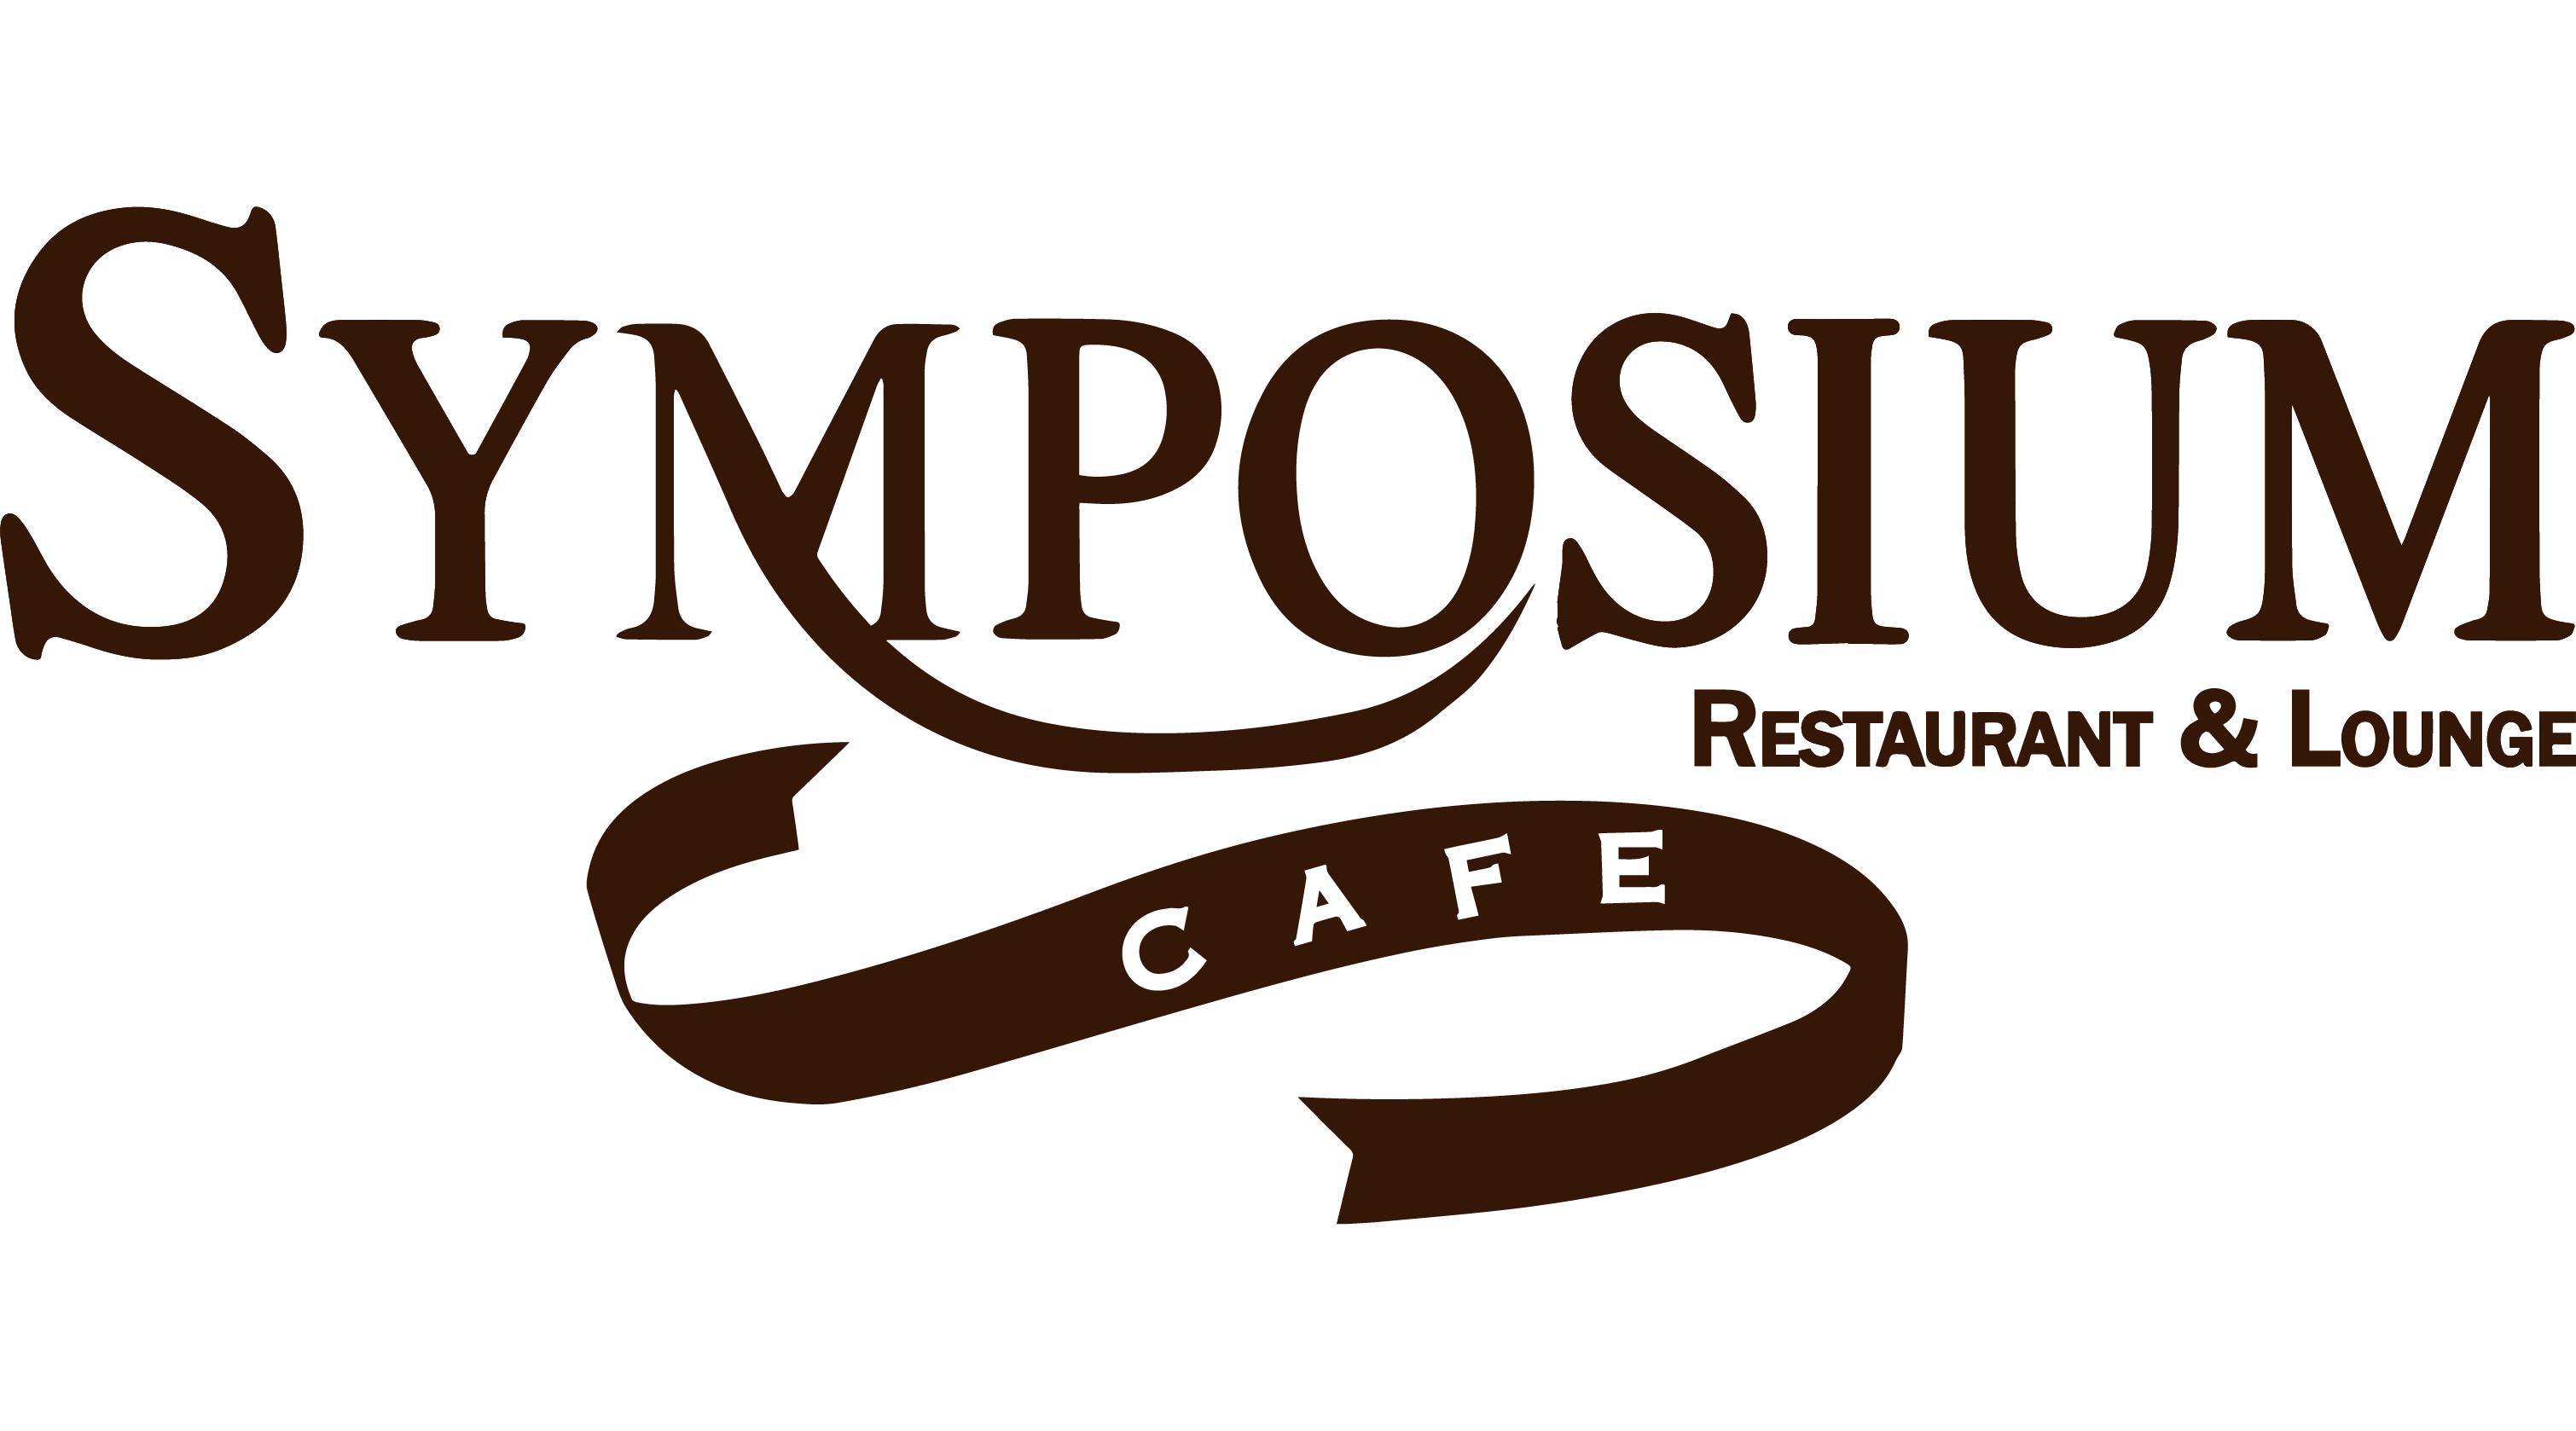 Symposium Restaurant & Lounge